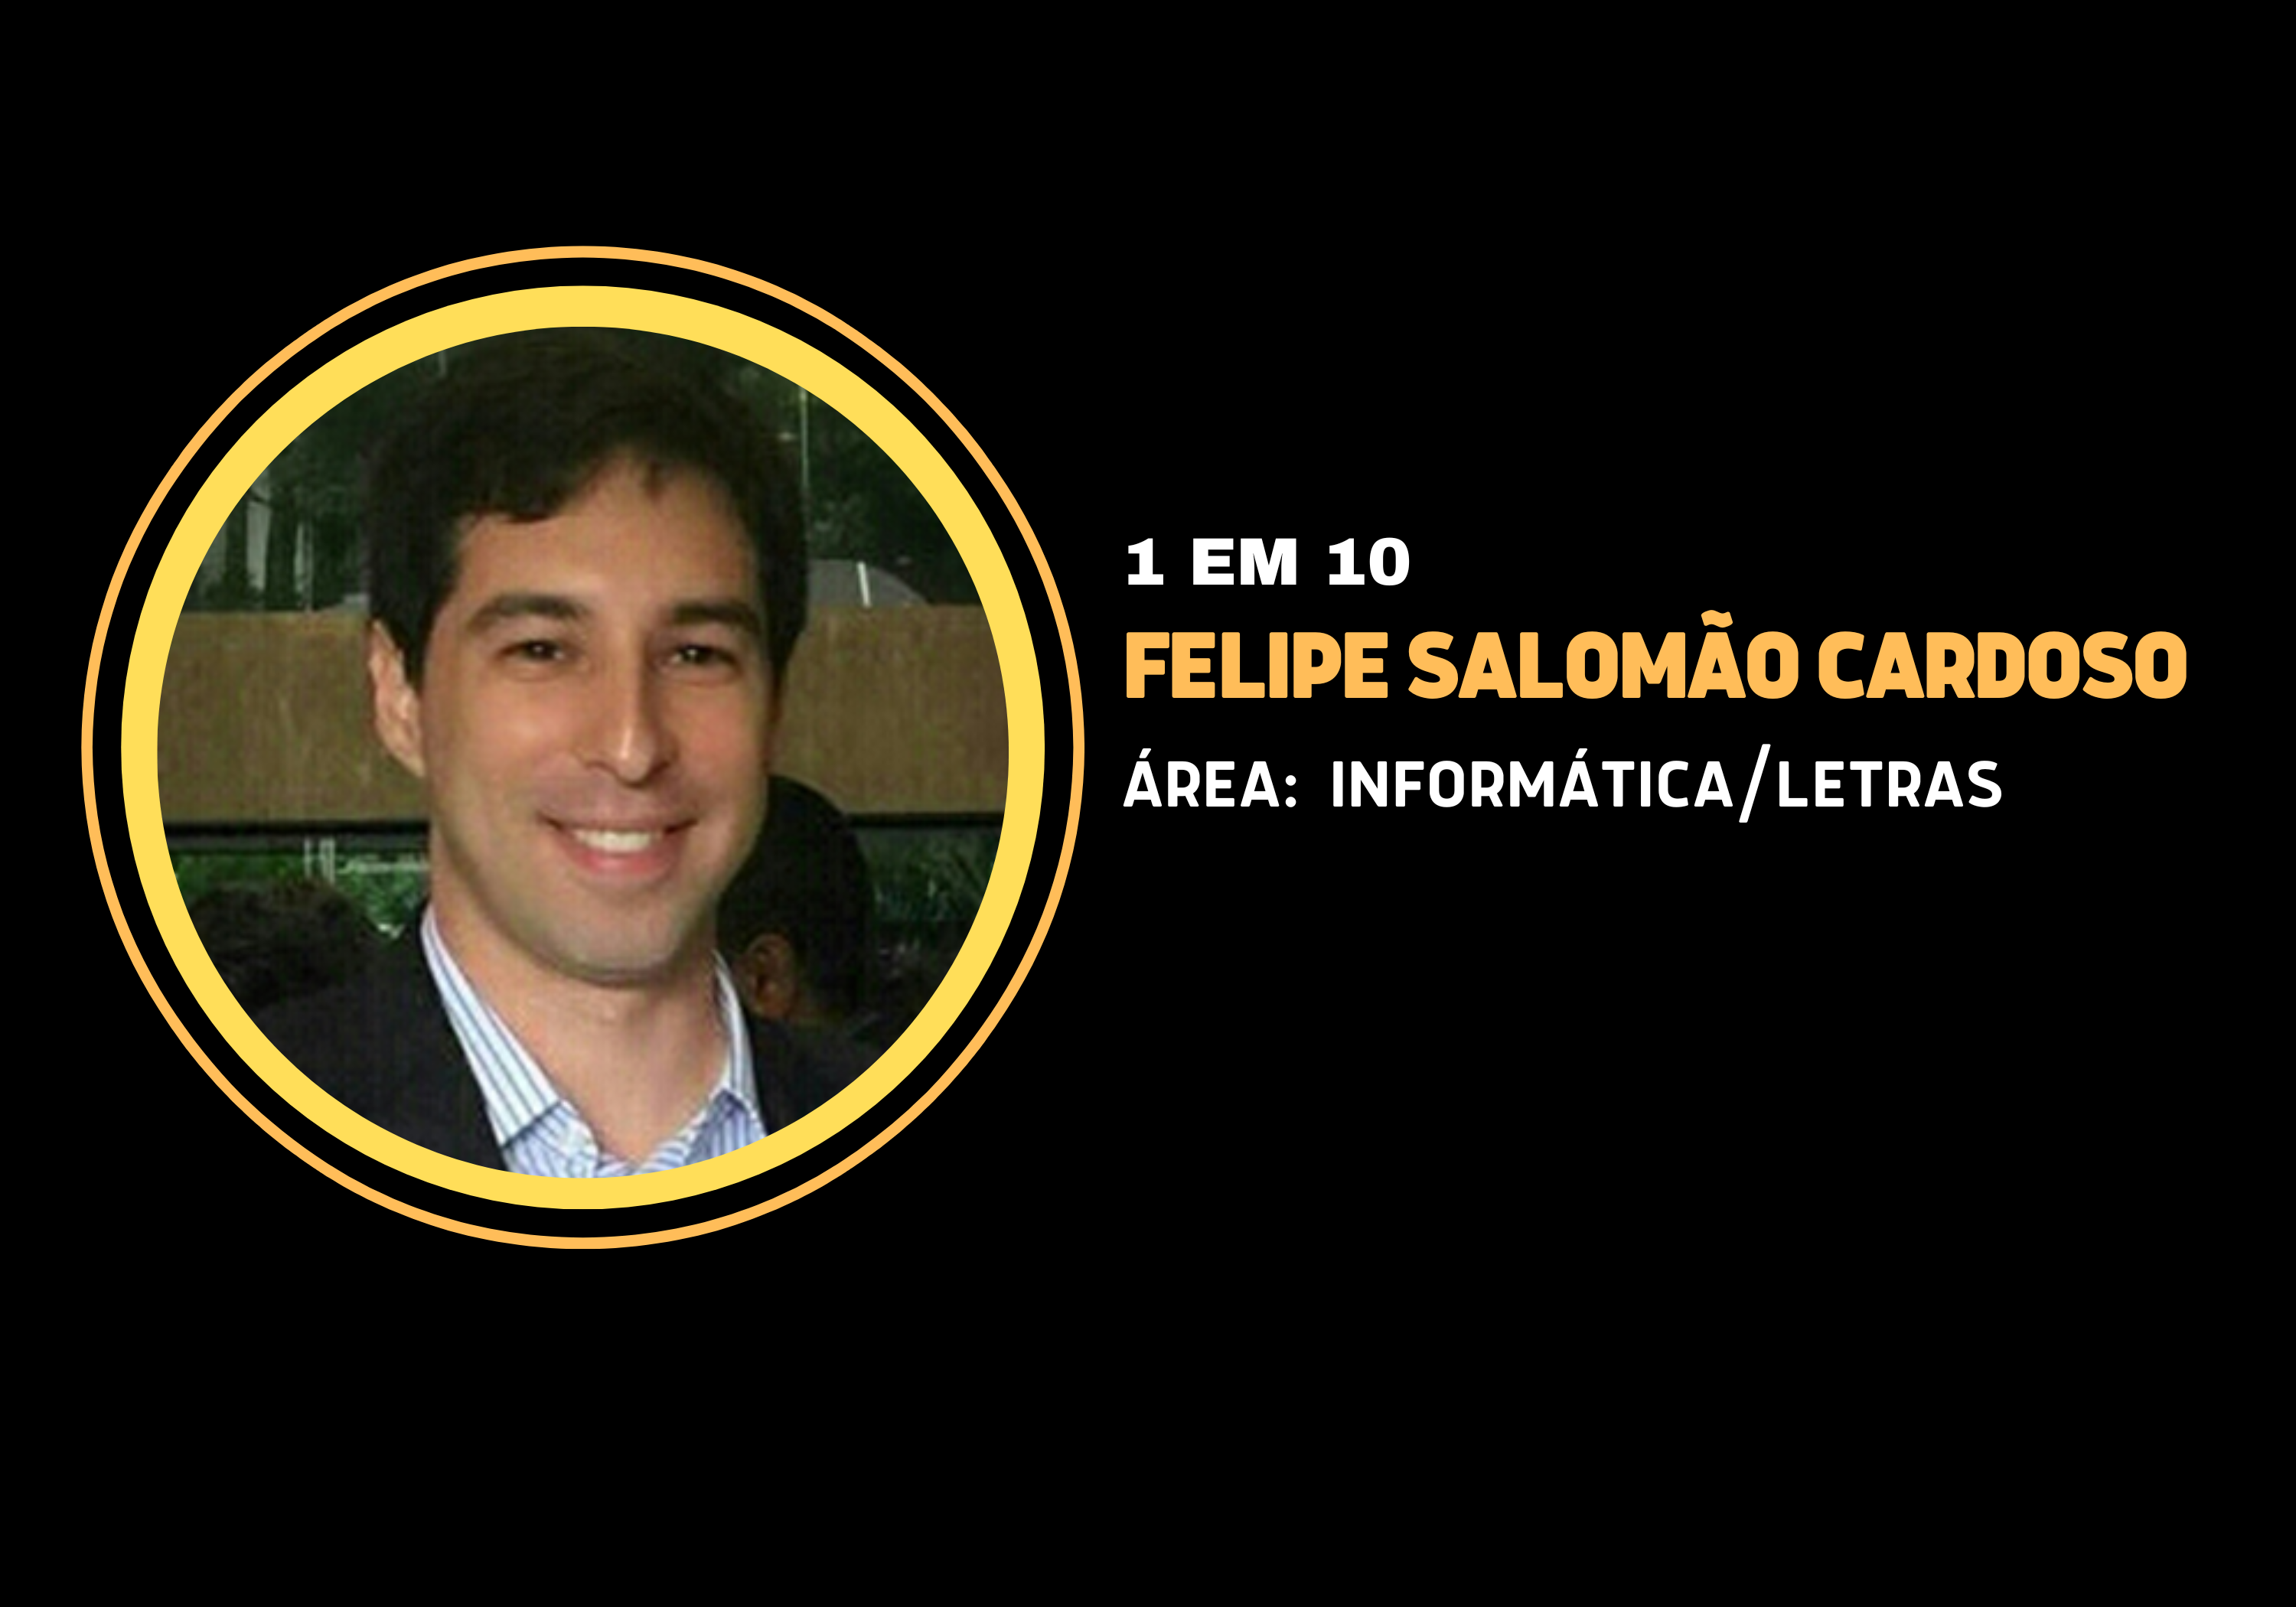 Felipe Salomão Cardoso | 1 em 10